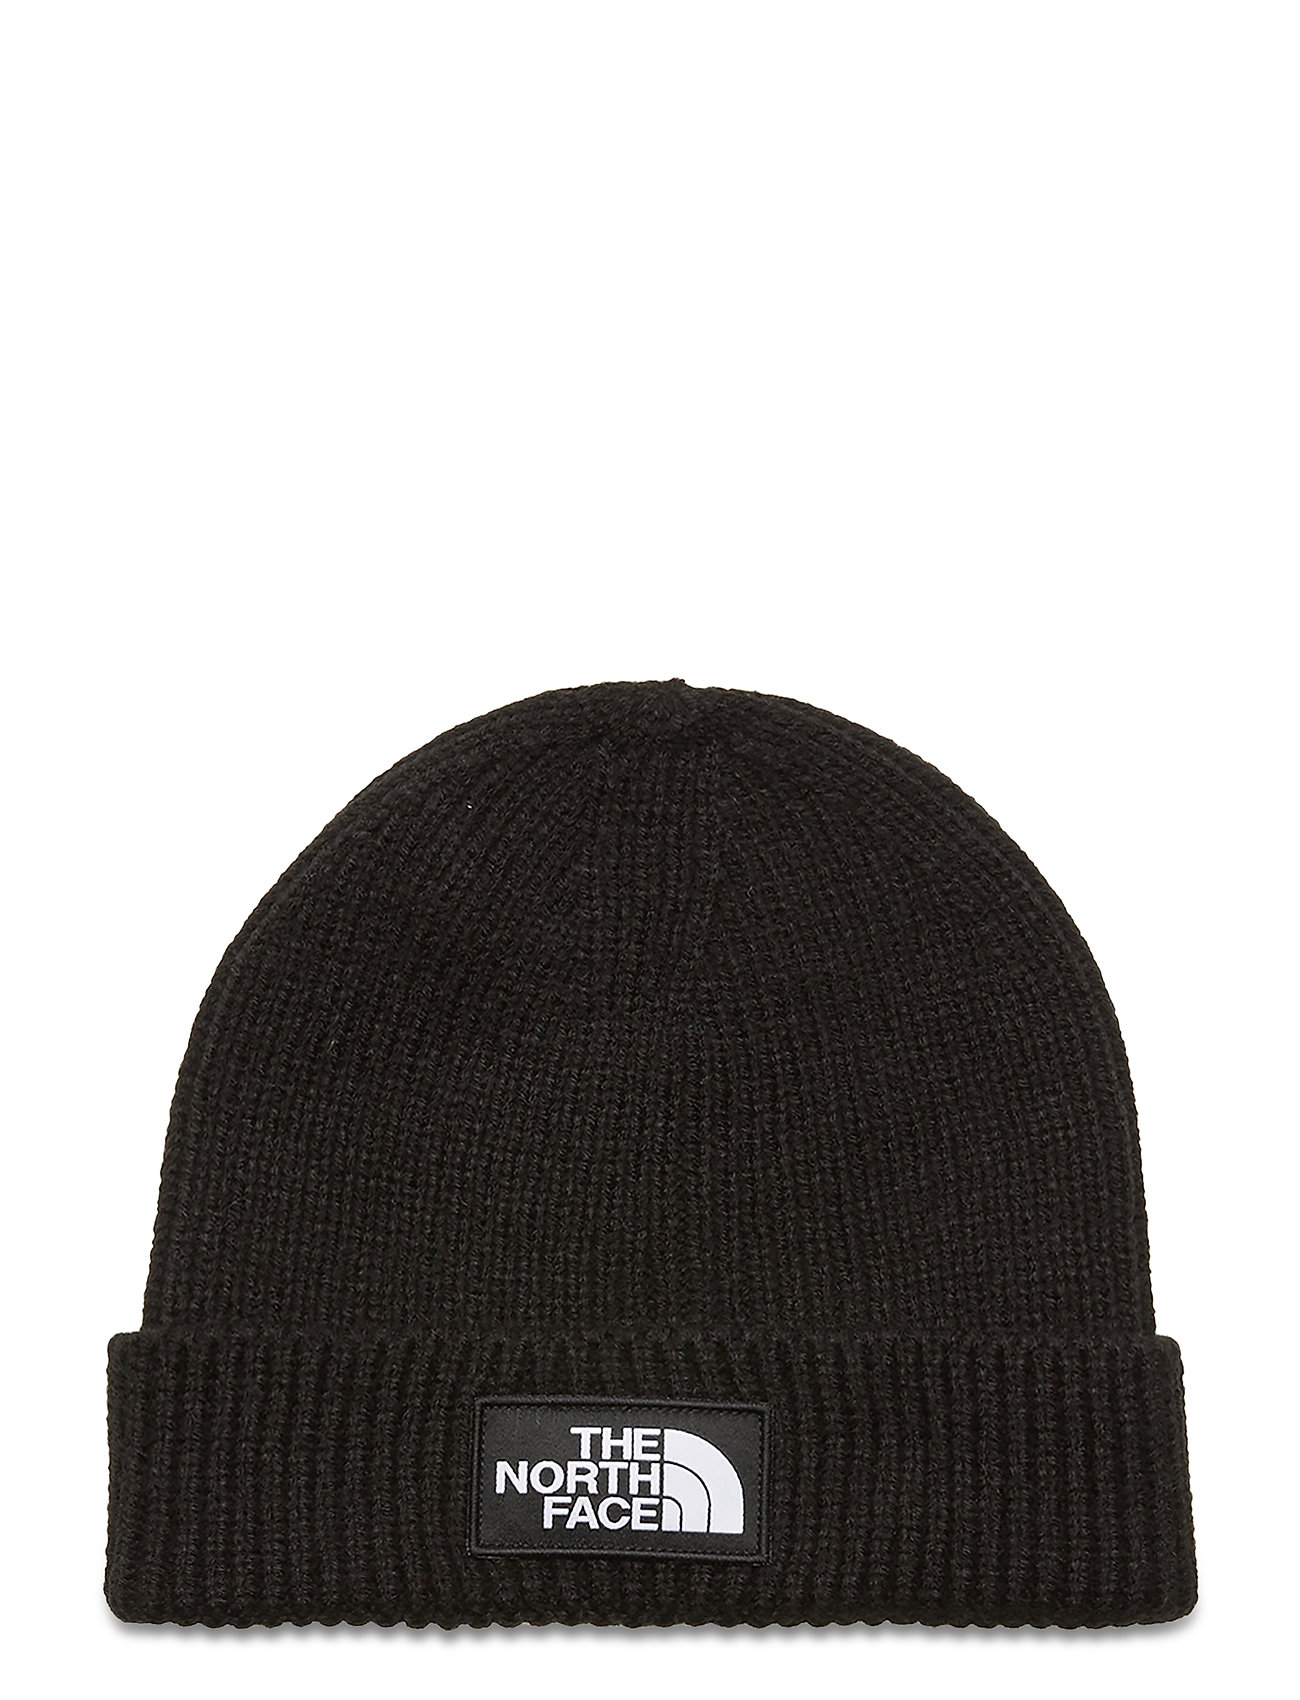 Y Box Logo Cuff Bean Accessories Headwear Hats Beanie Musta The North Face